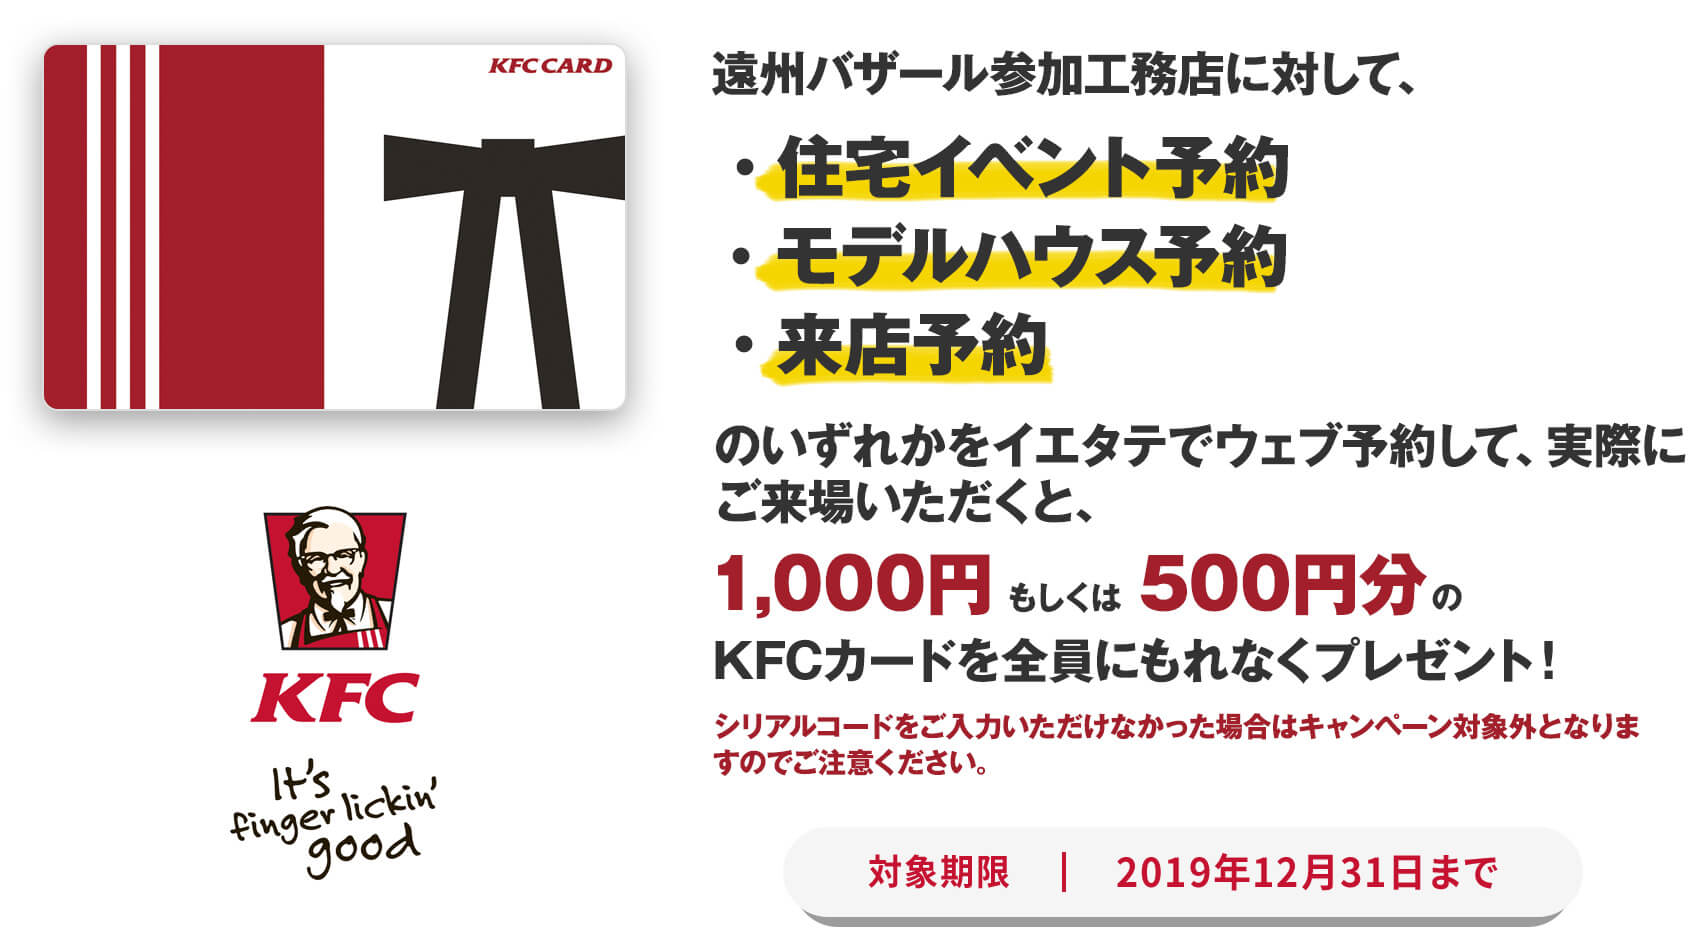 実際にご来場いただくと、1000円もしくは500円分のKFCカードを全員にもれなくプレゼント！